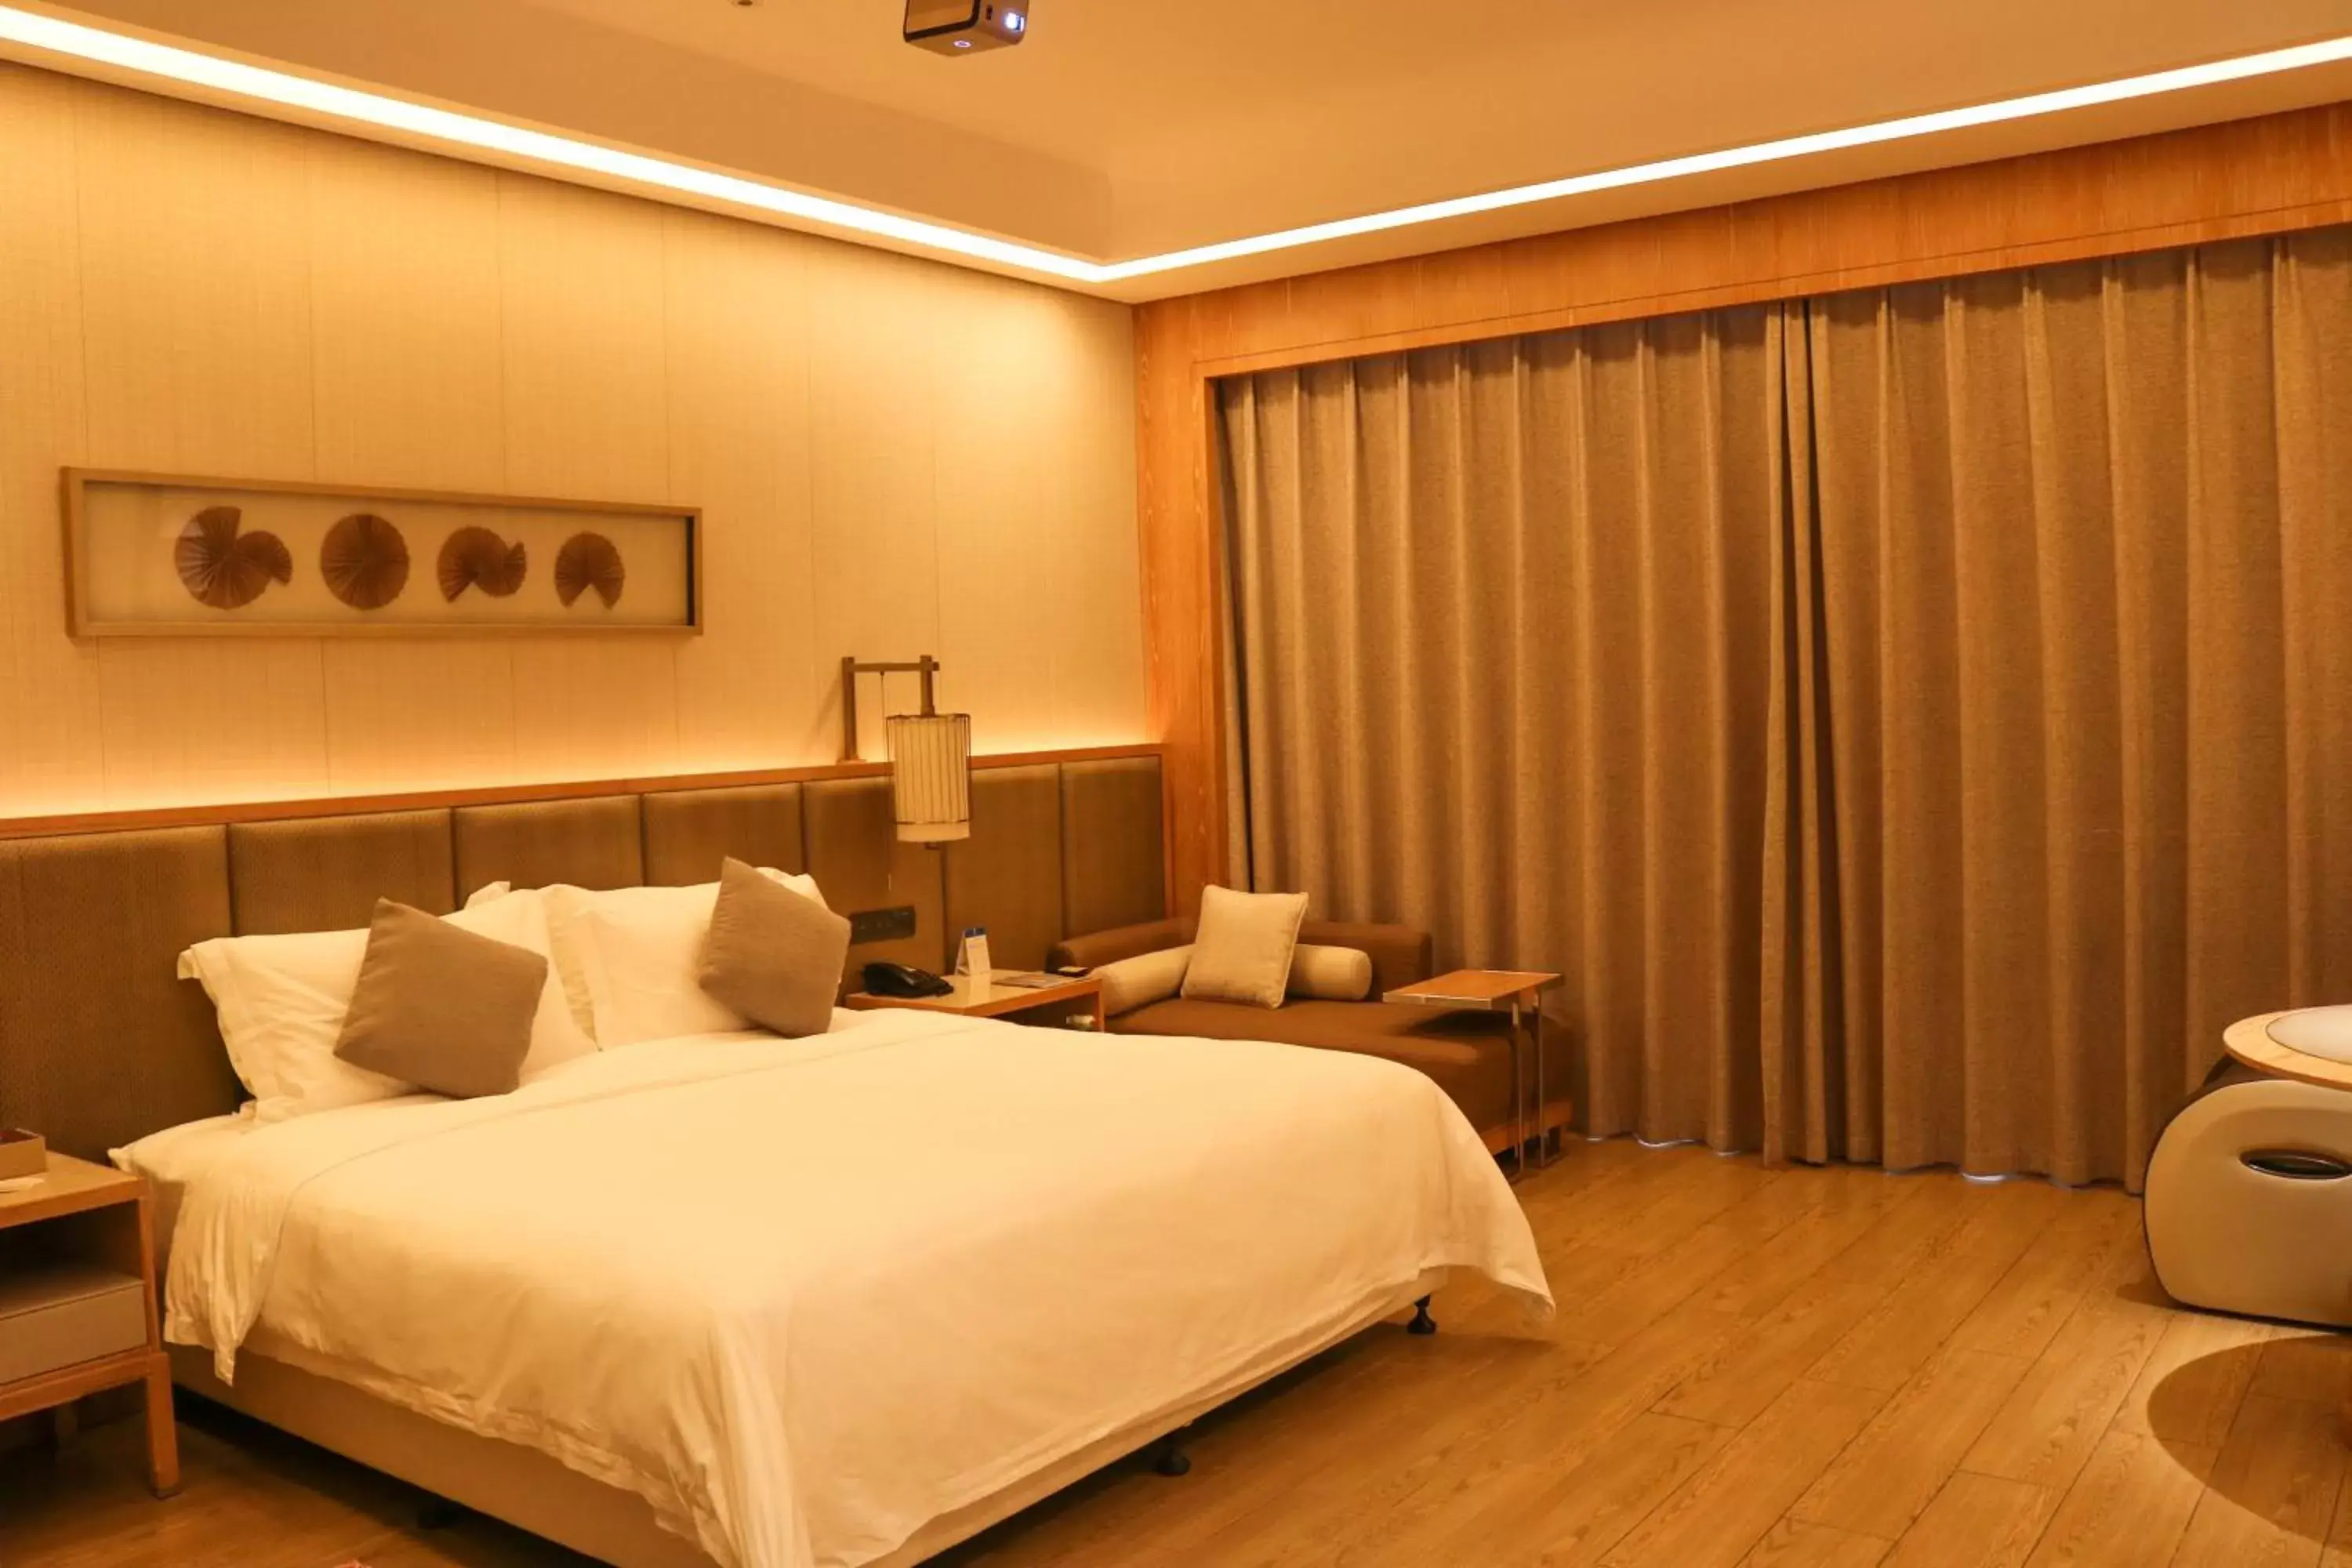 Bed in Harman Resort Hotel Sanya